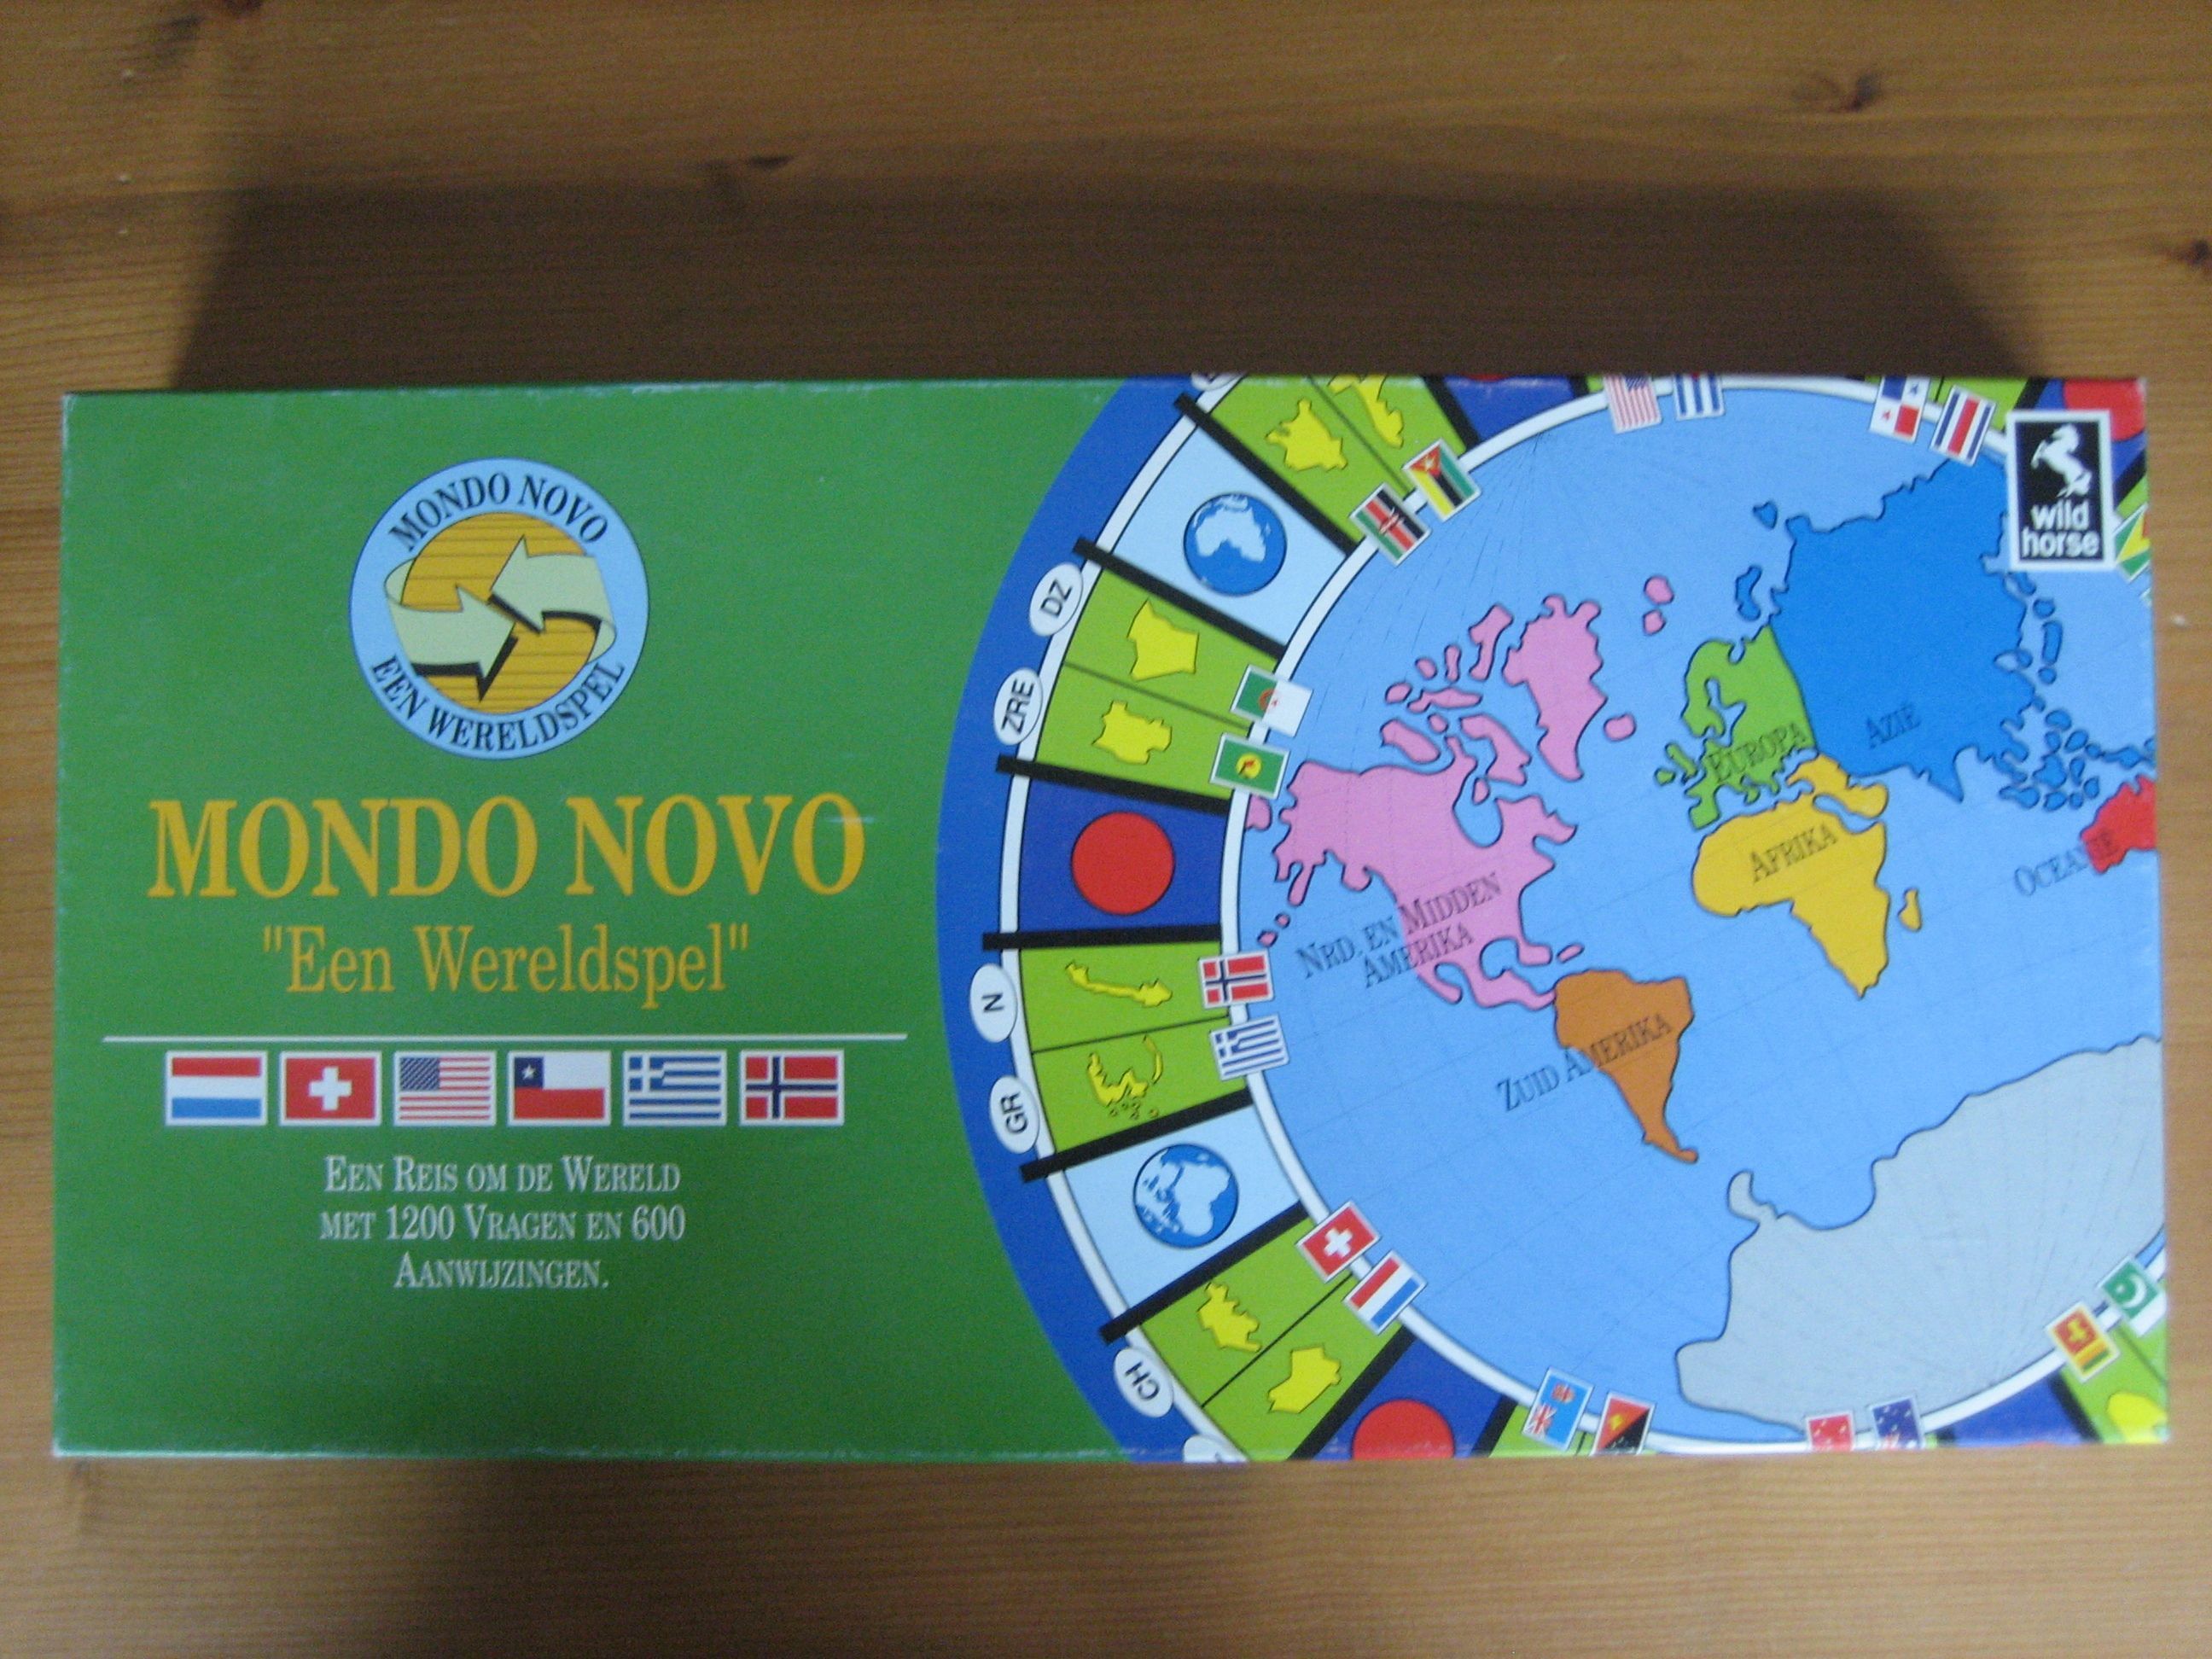 Mondo Novo "Een Wereldspel"